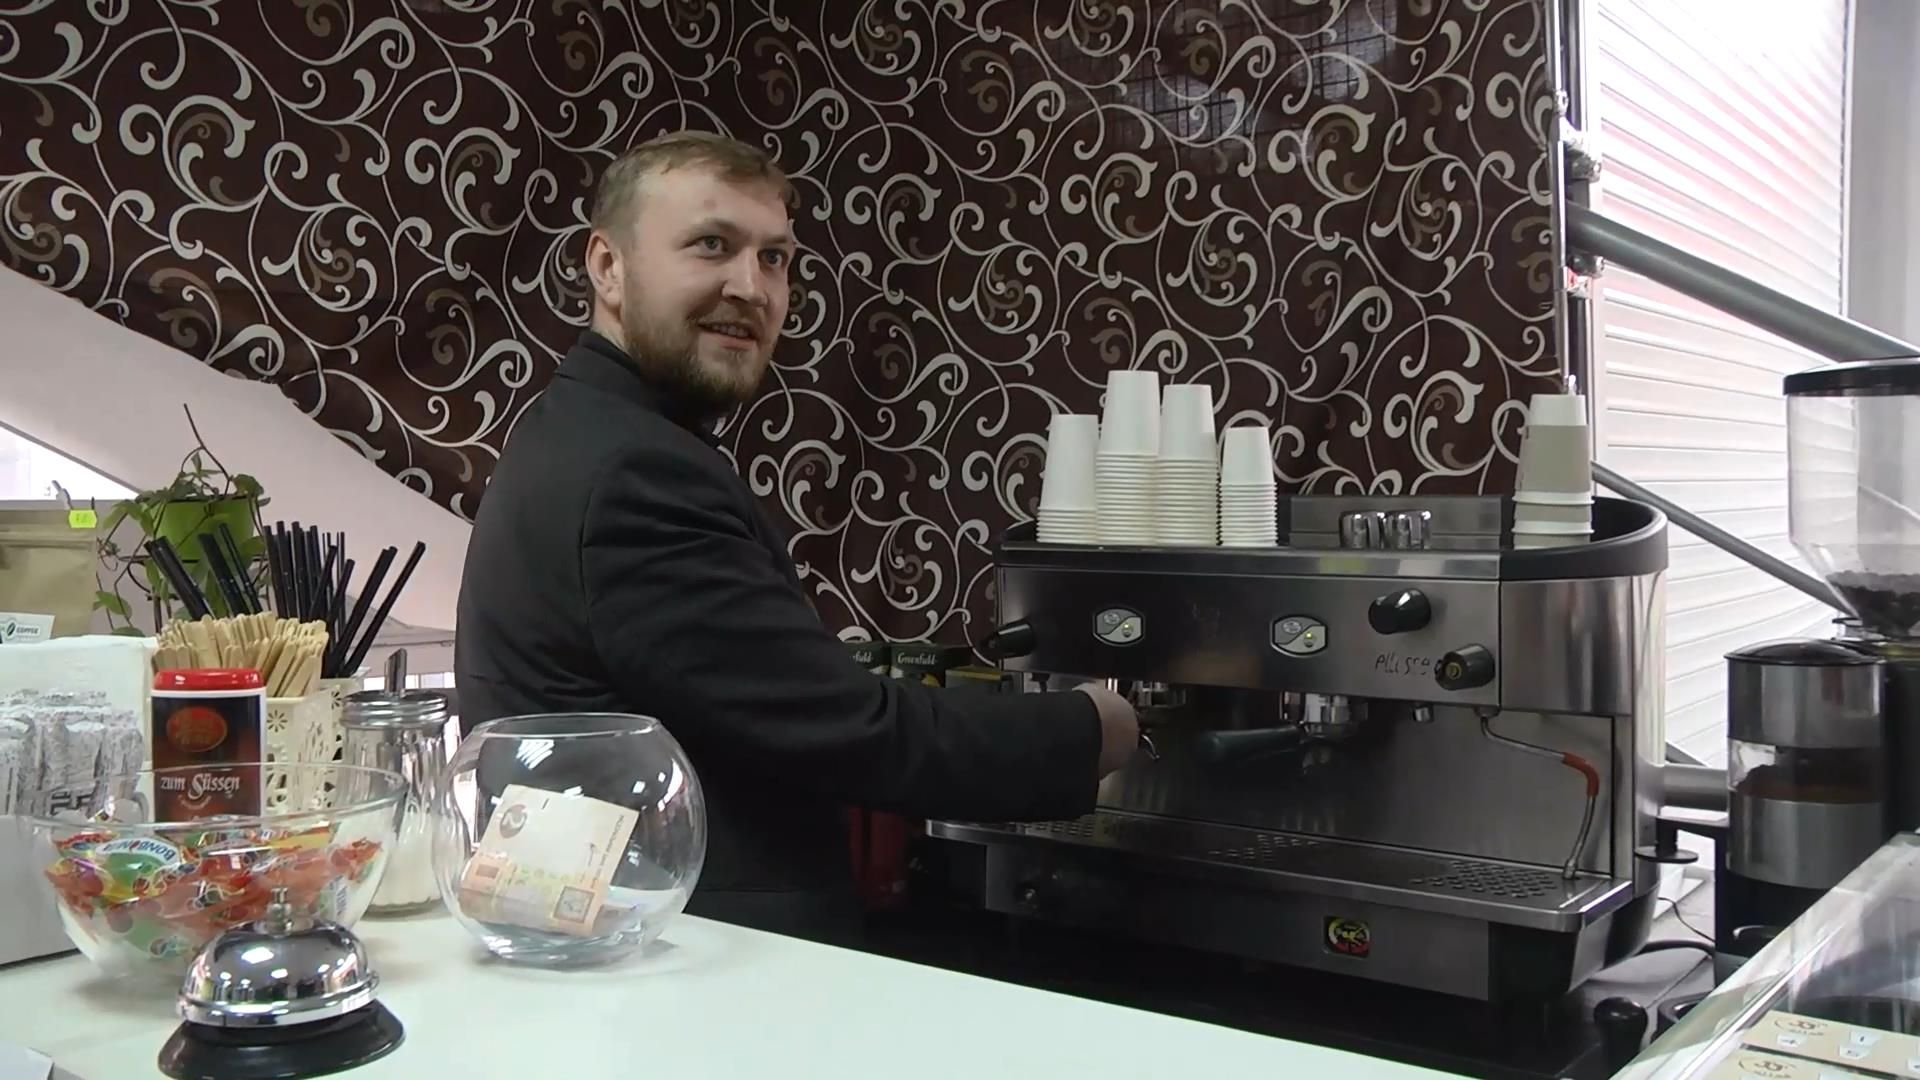 Кофе, как реабилитация: боец после войны открыл кофейню